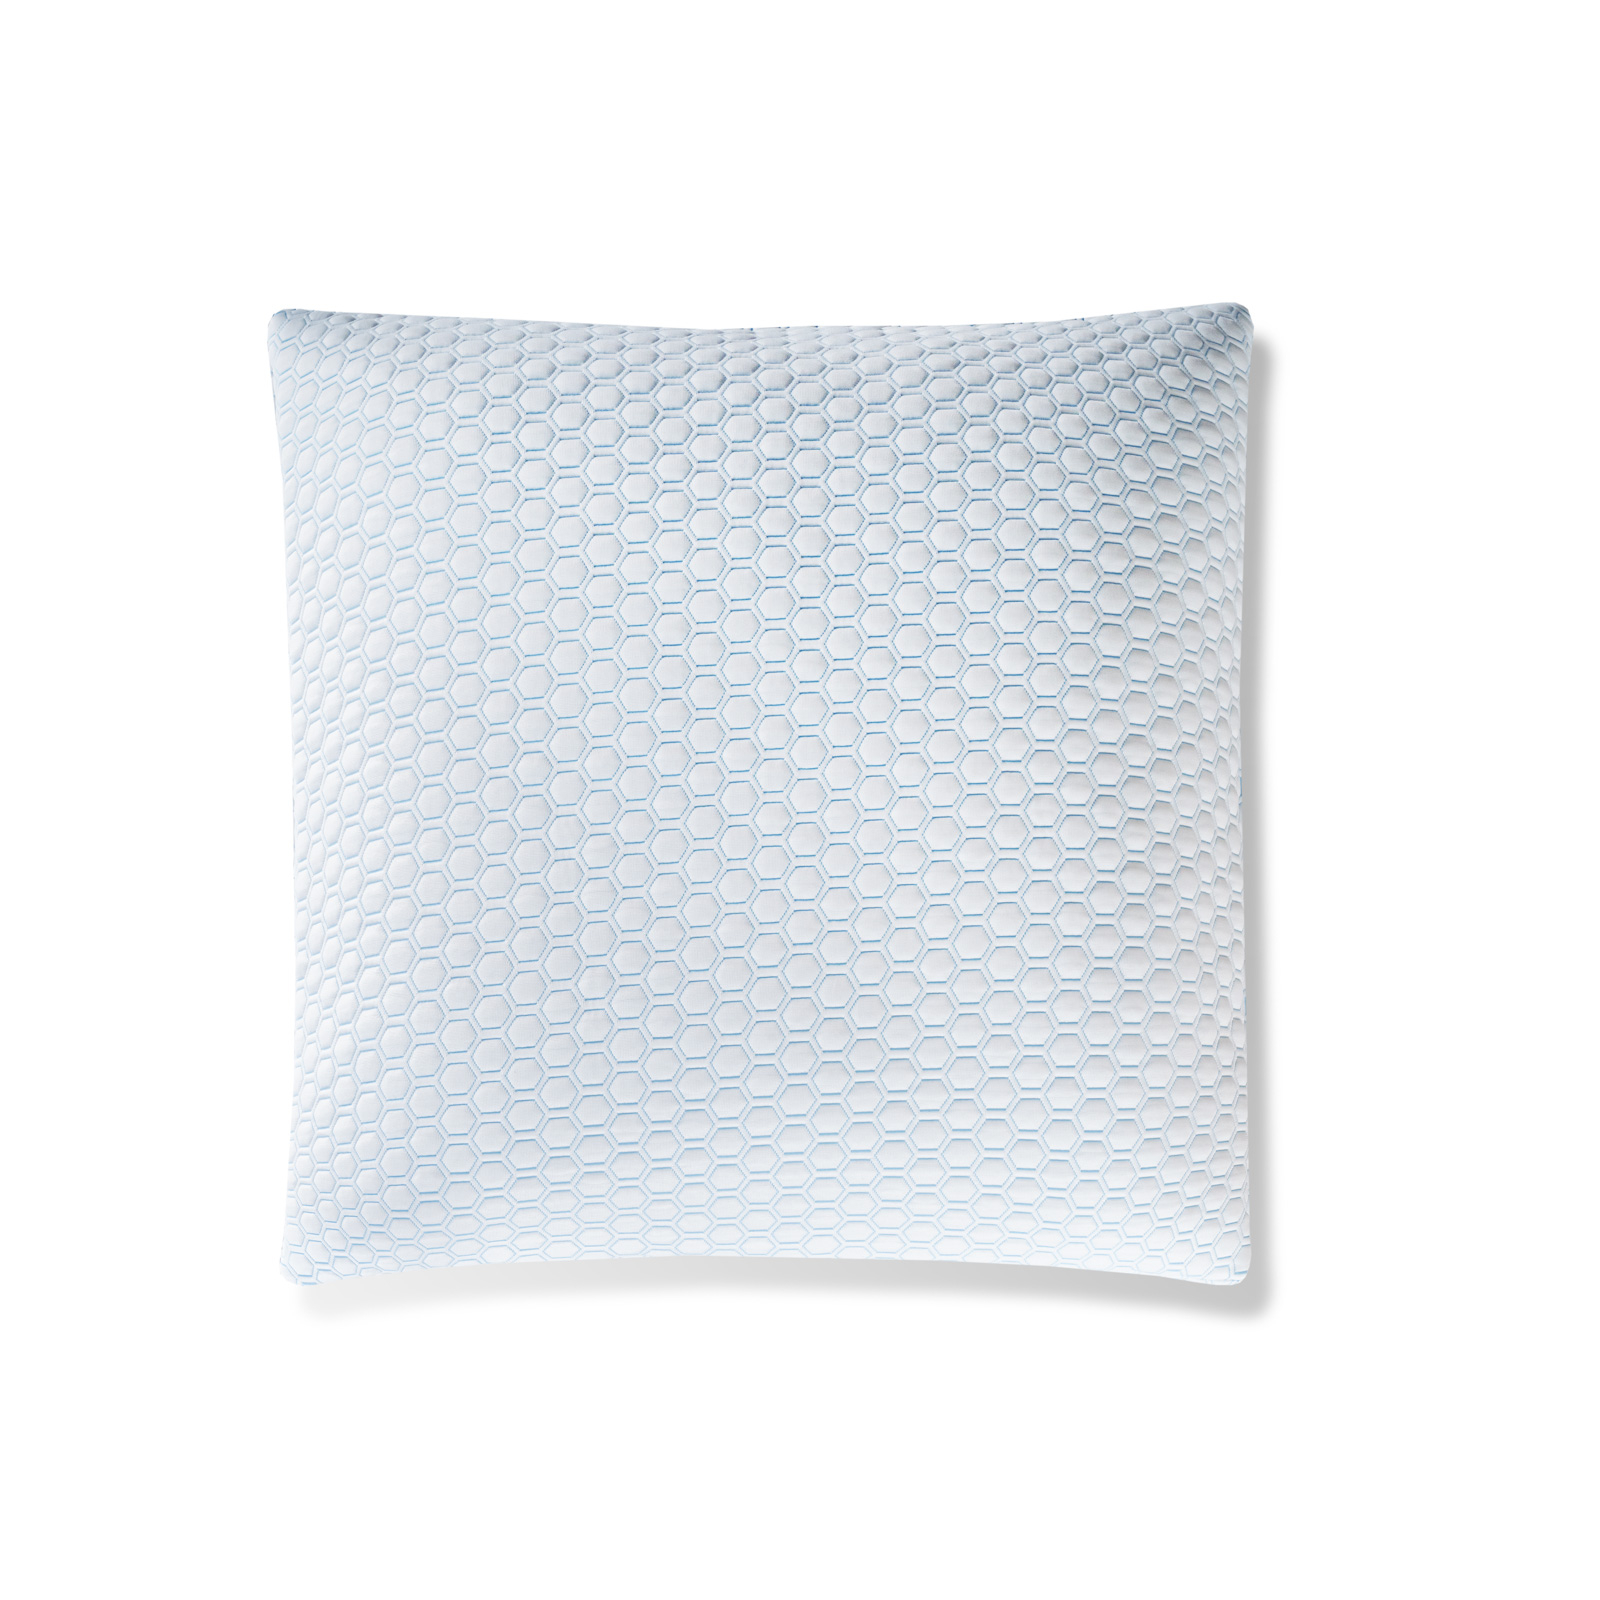 Где купить Защитный чехол для подушки Medsleep Orto Cool белый с голубым 70х70 см Medsleep 